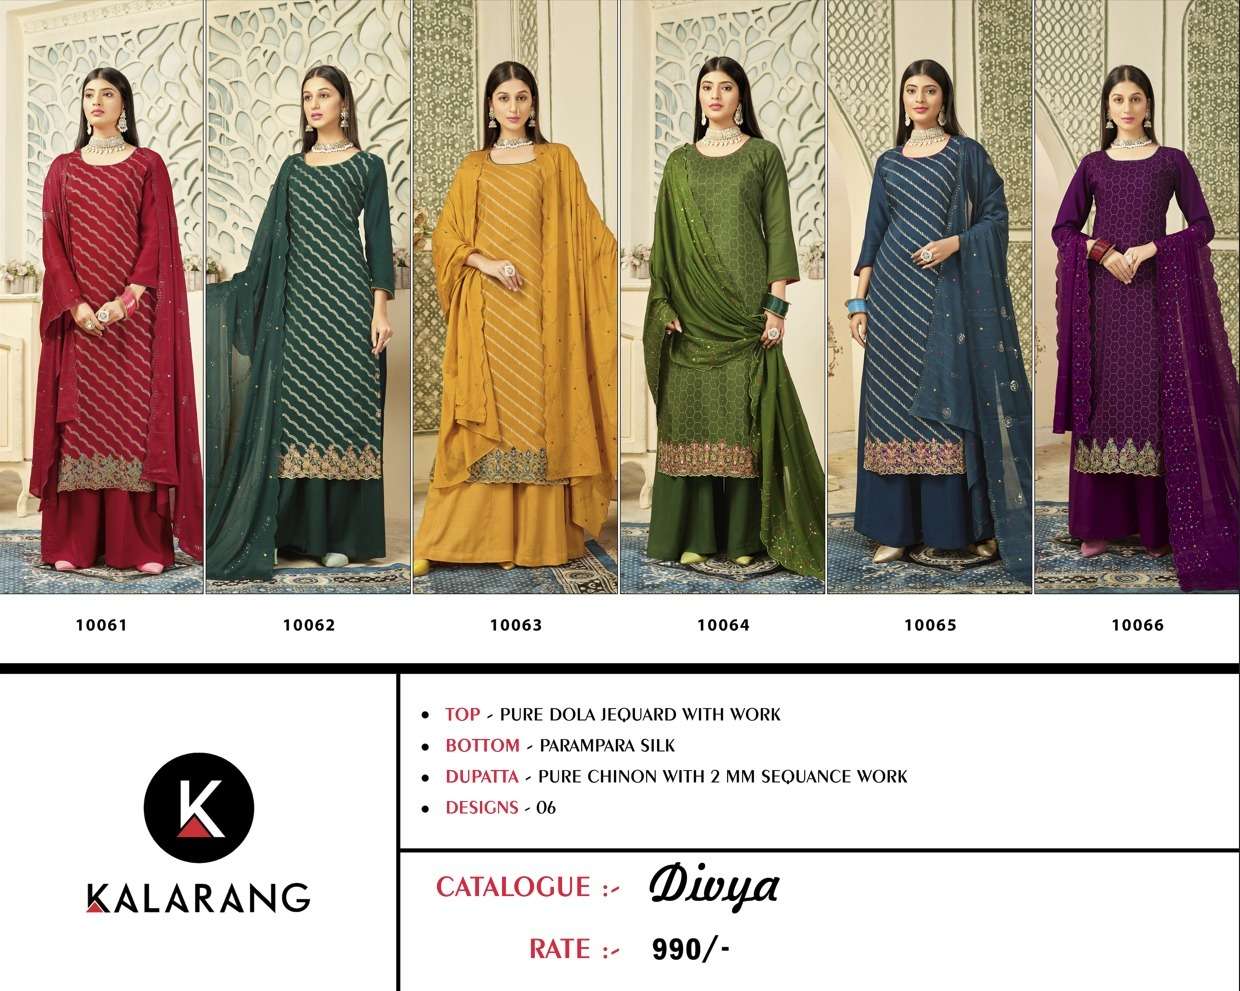 kalarang divya 10061-10066 series stylish designer indian salwar kameez catalogue manufacturer surat 